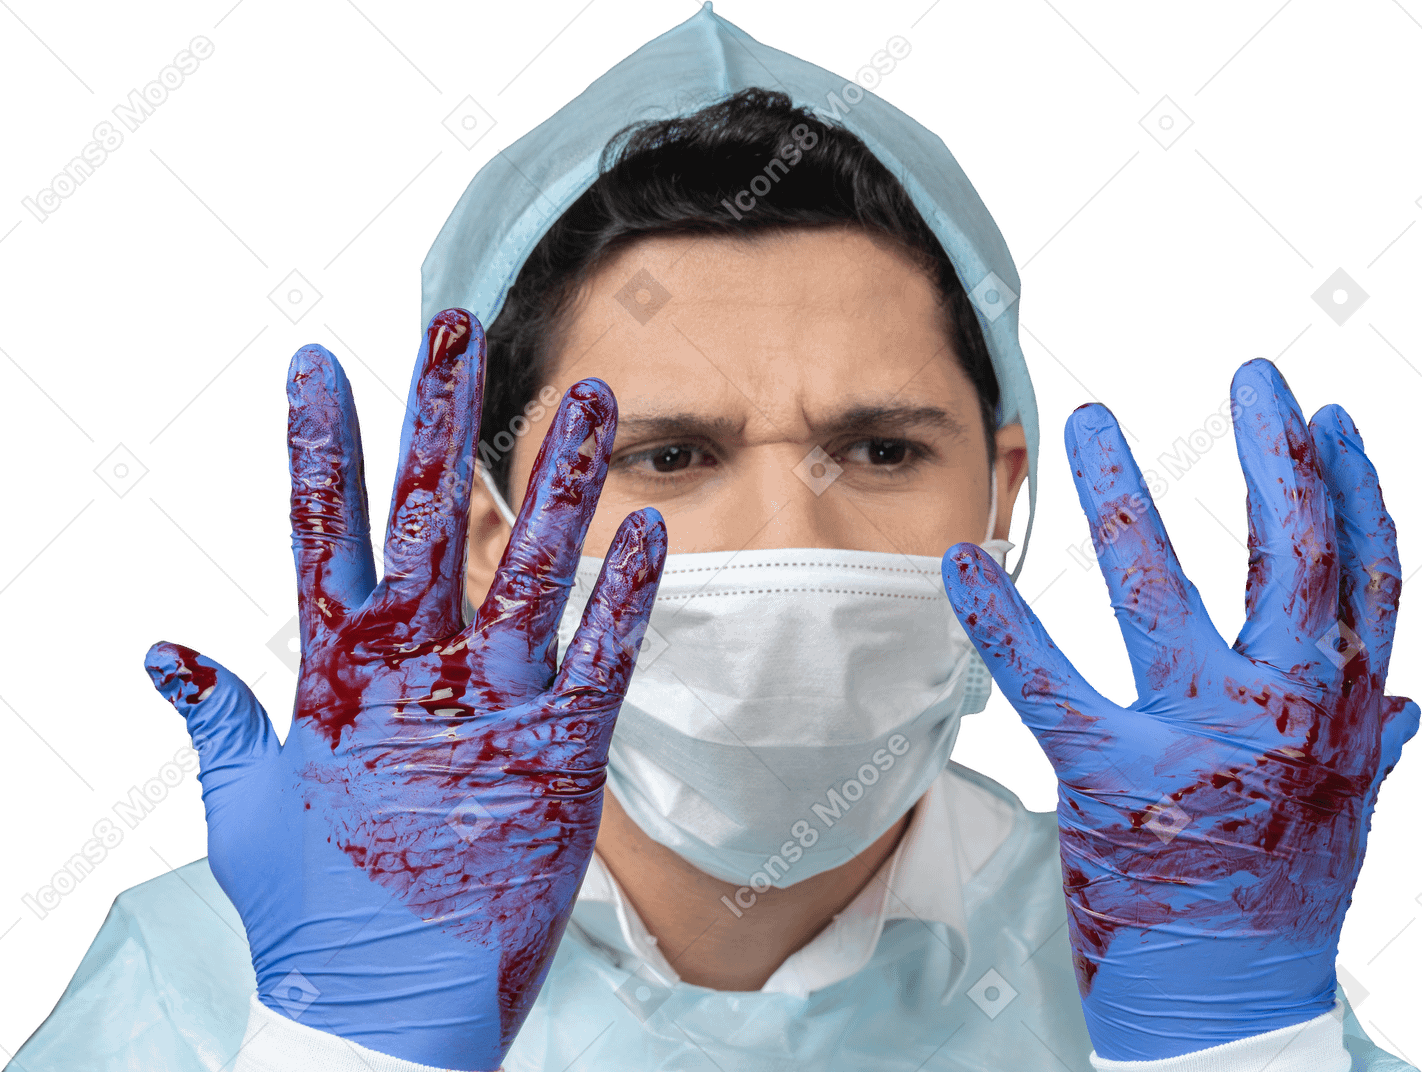 Dottore che si guarda le mani ricoperte di sangue